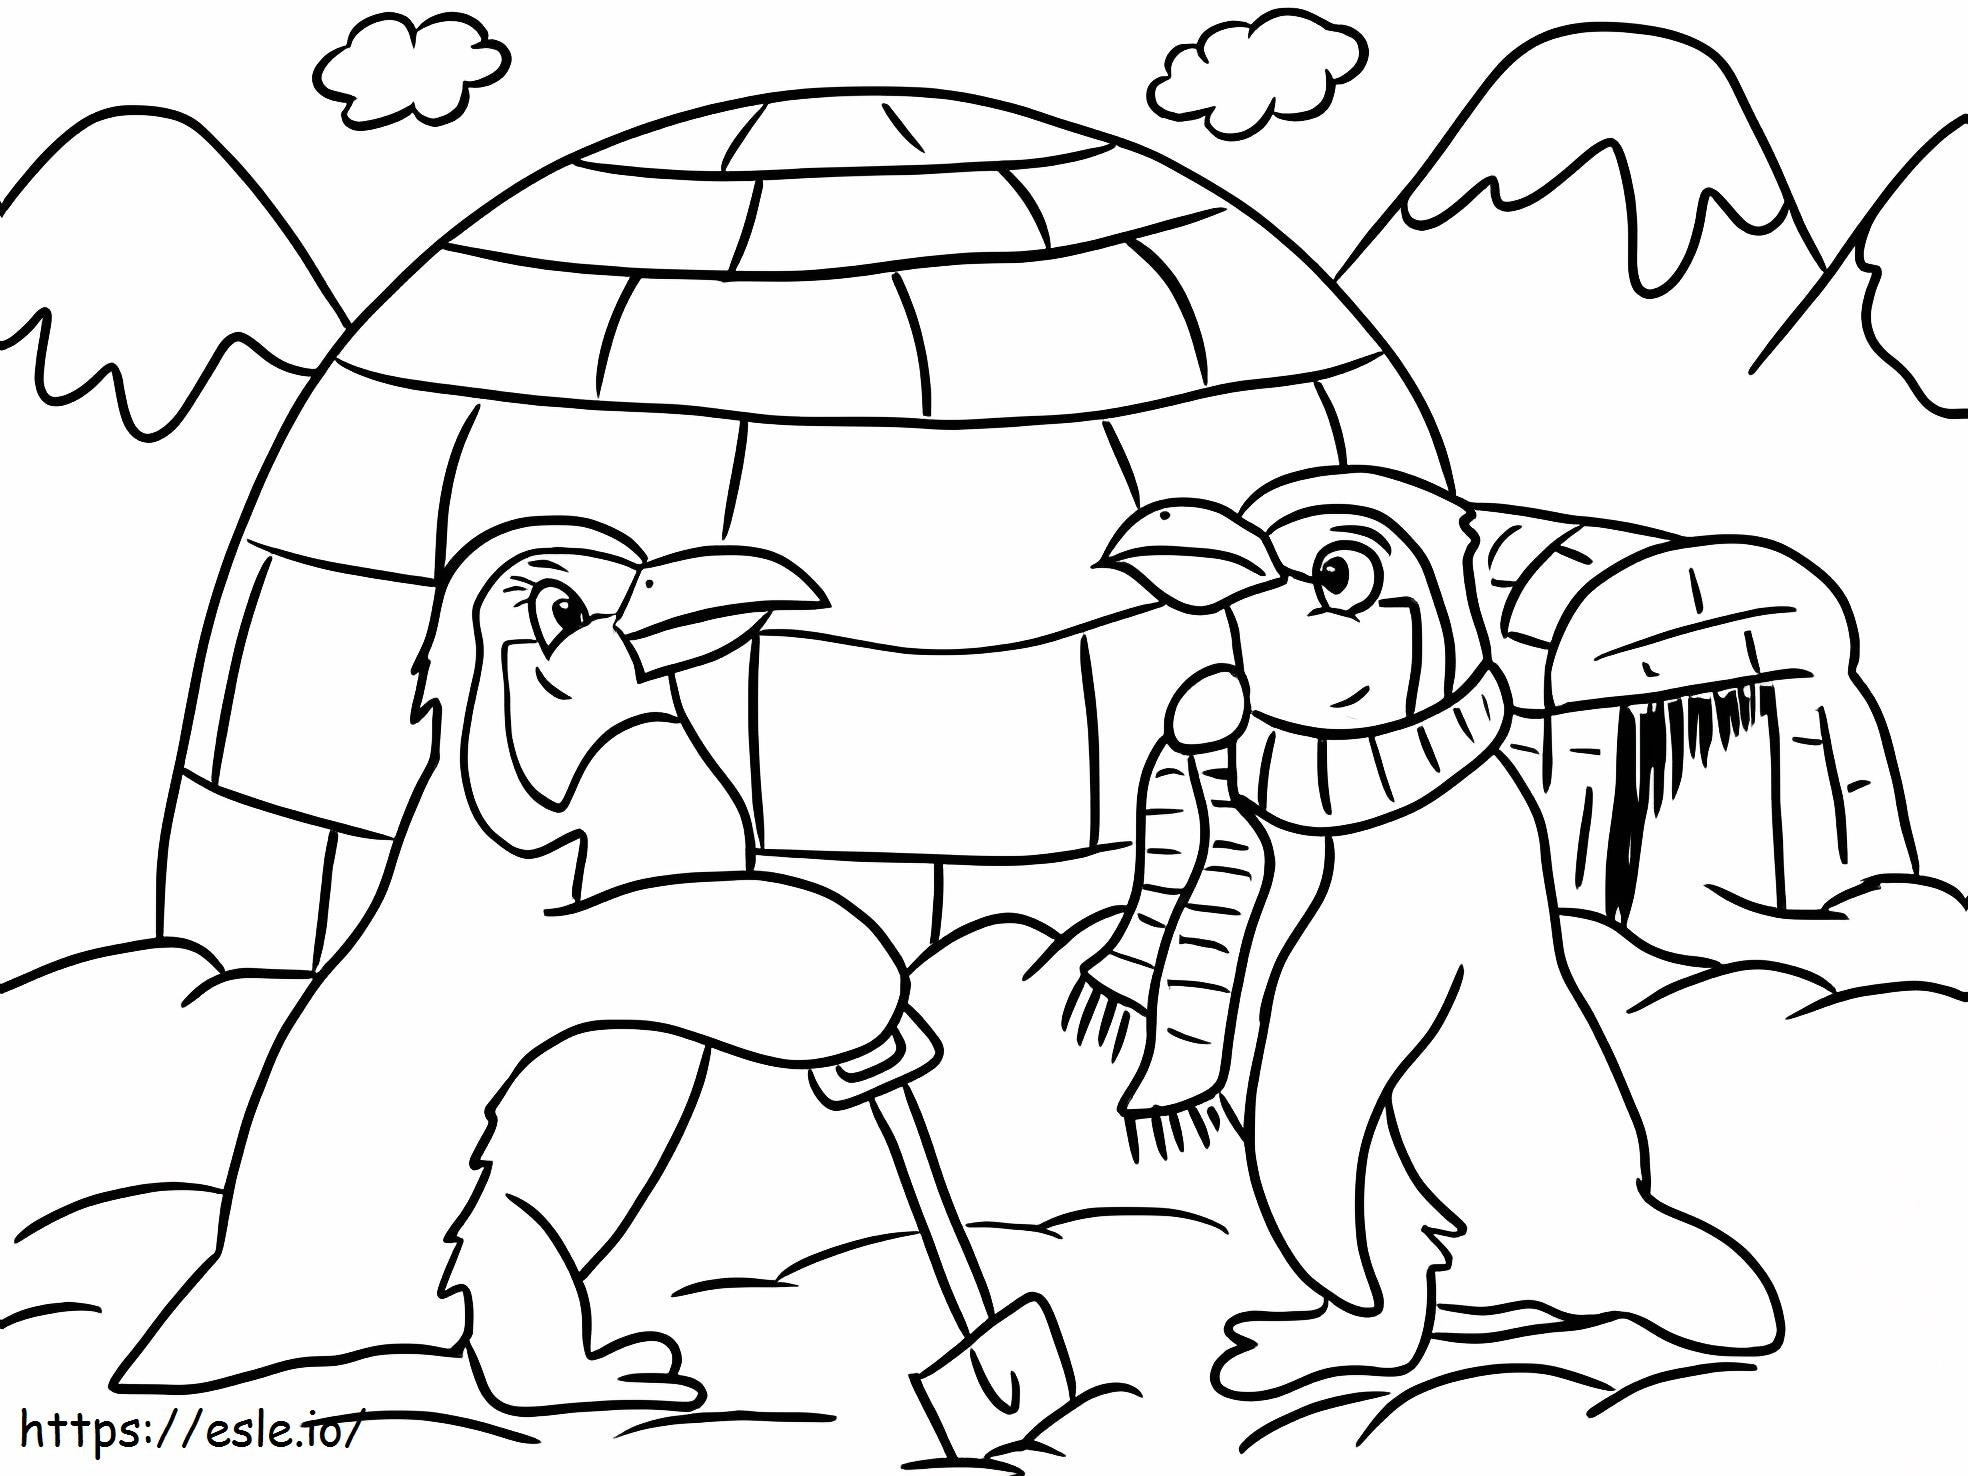 Pinguini și iglu de colorat